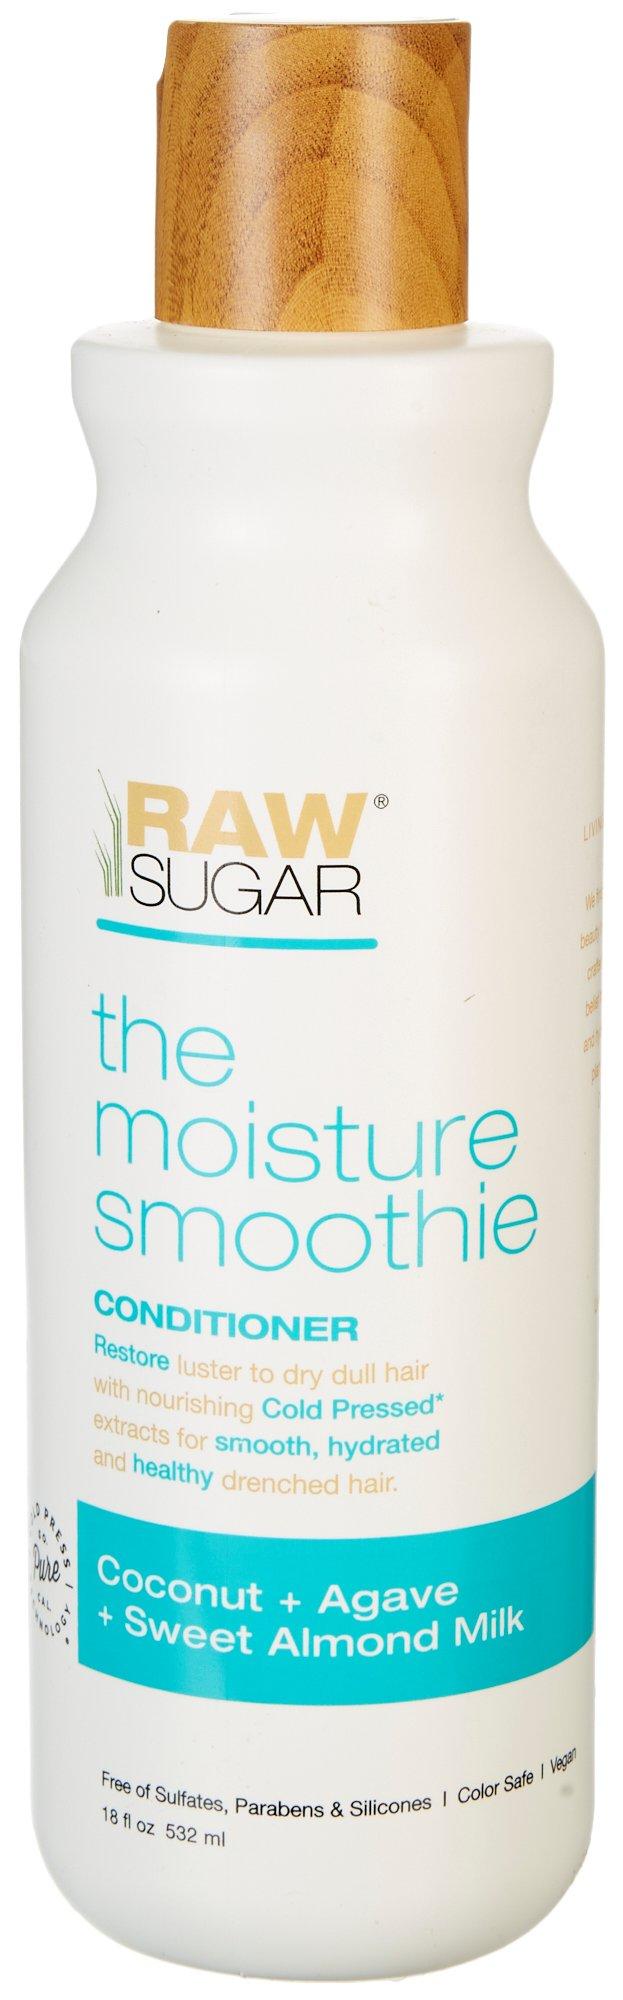 Raw Sugar Moisture Smoothie Conditioner 18 Fl. Oz.